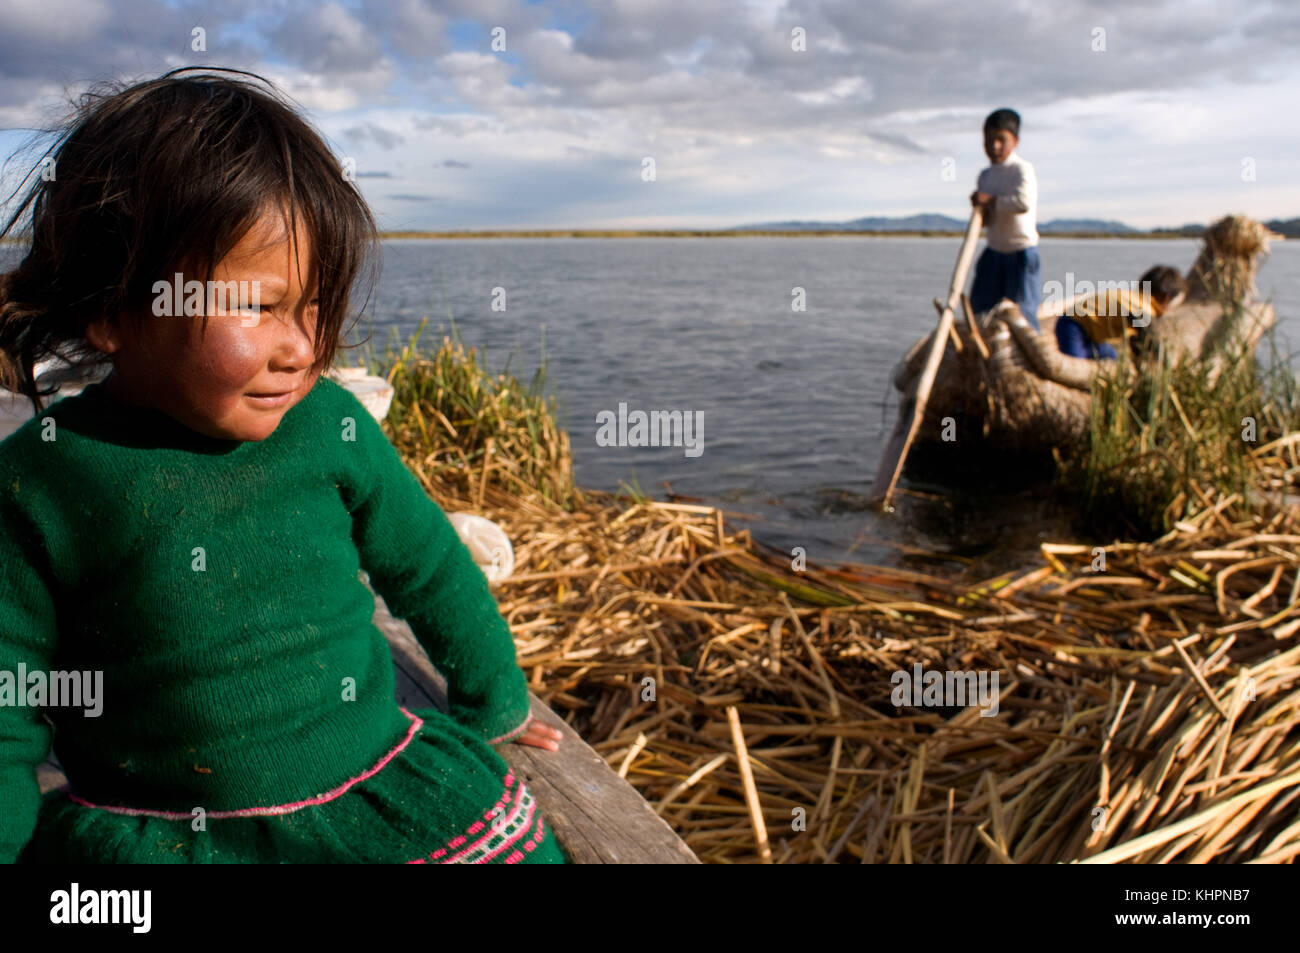 Uros island, il lago Titicaca, Perù, Sud America. bambini vela in un totora barca sul lago Titicaca vicino ad un isola abitata da uros. Foto Stock